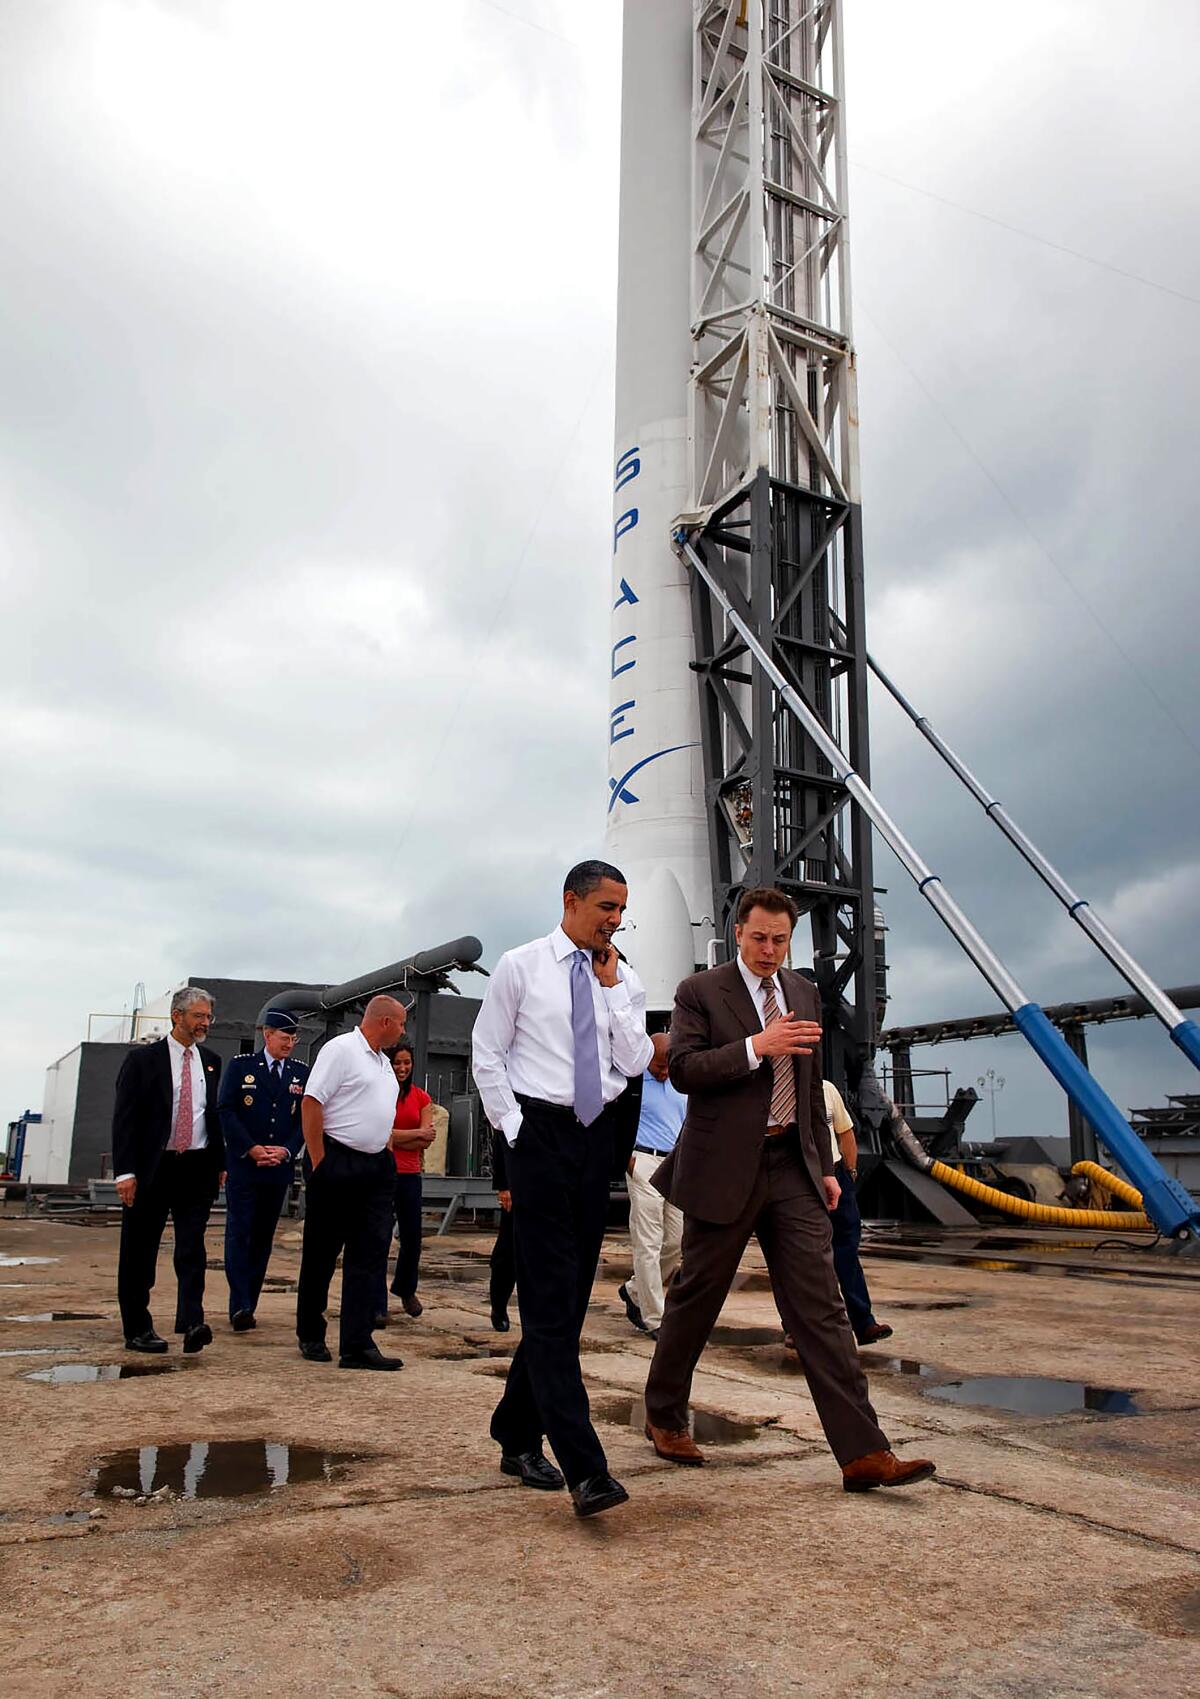 İki adam, arkalarında bir grup adamla birlikte fırlatma rampasındaki bir roketin yanından geçiyor.